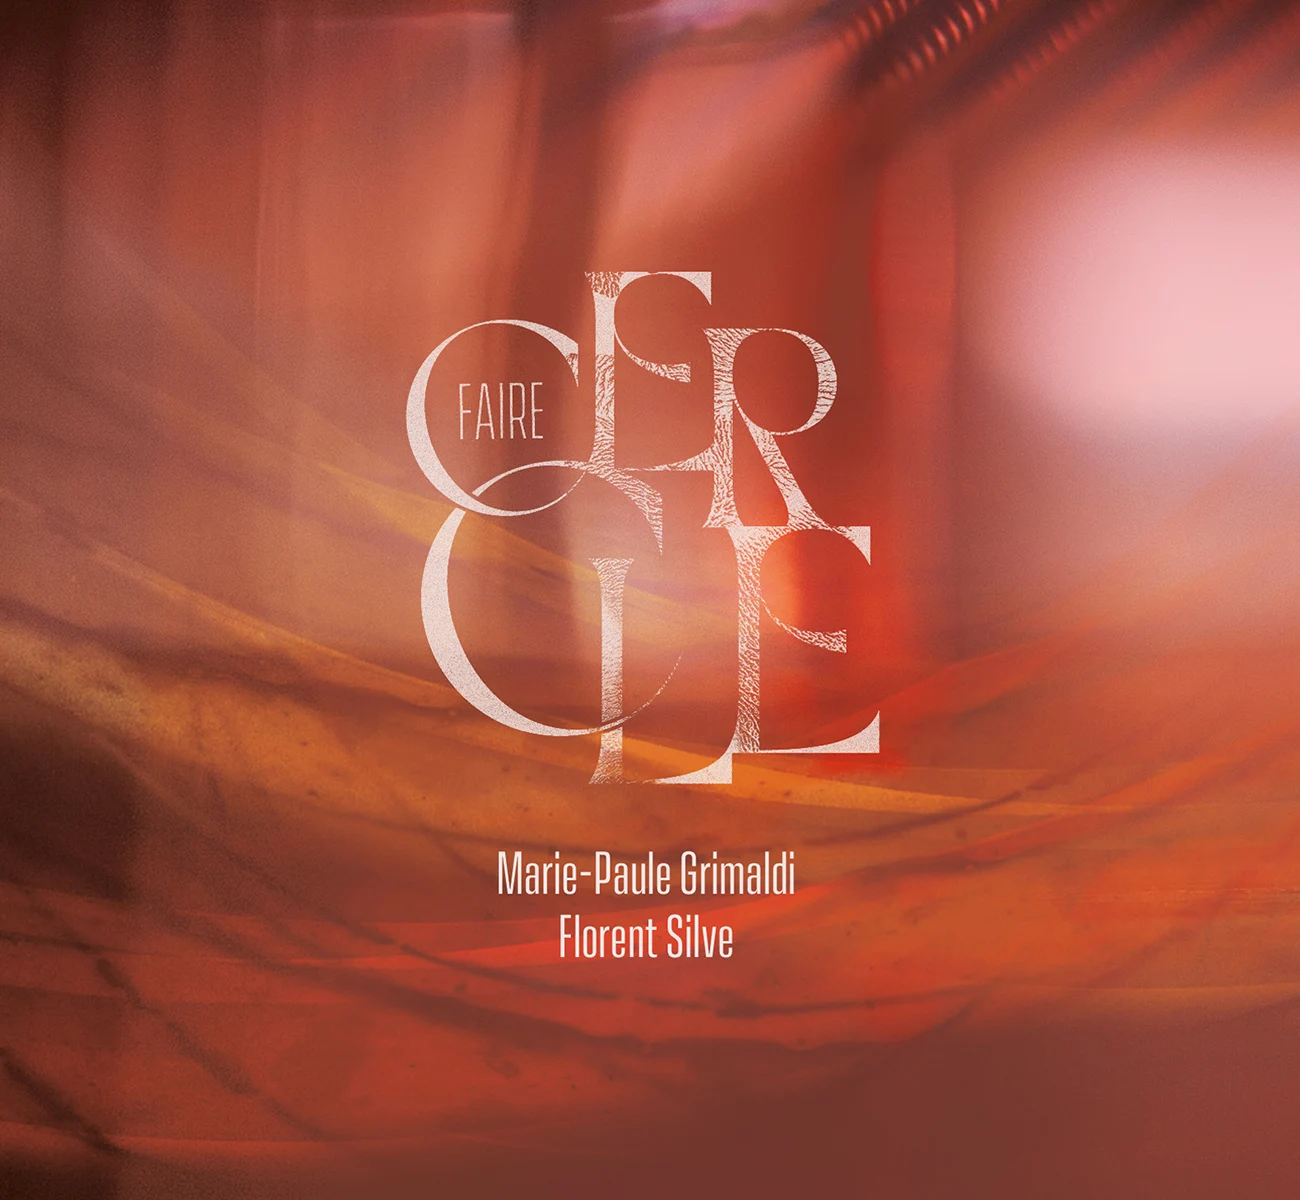 Pochette album piano voix CD Faire Cercle, duo Marie-Paule Grimaldi, Florent Silve - vignette portfolio